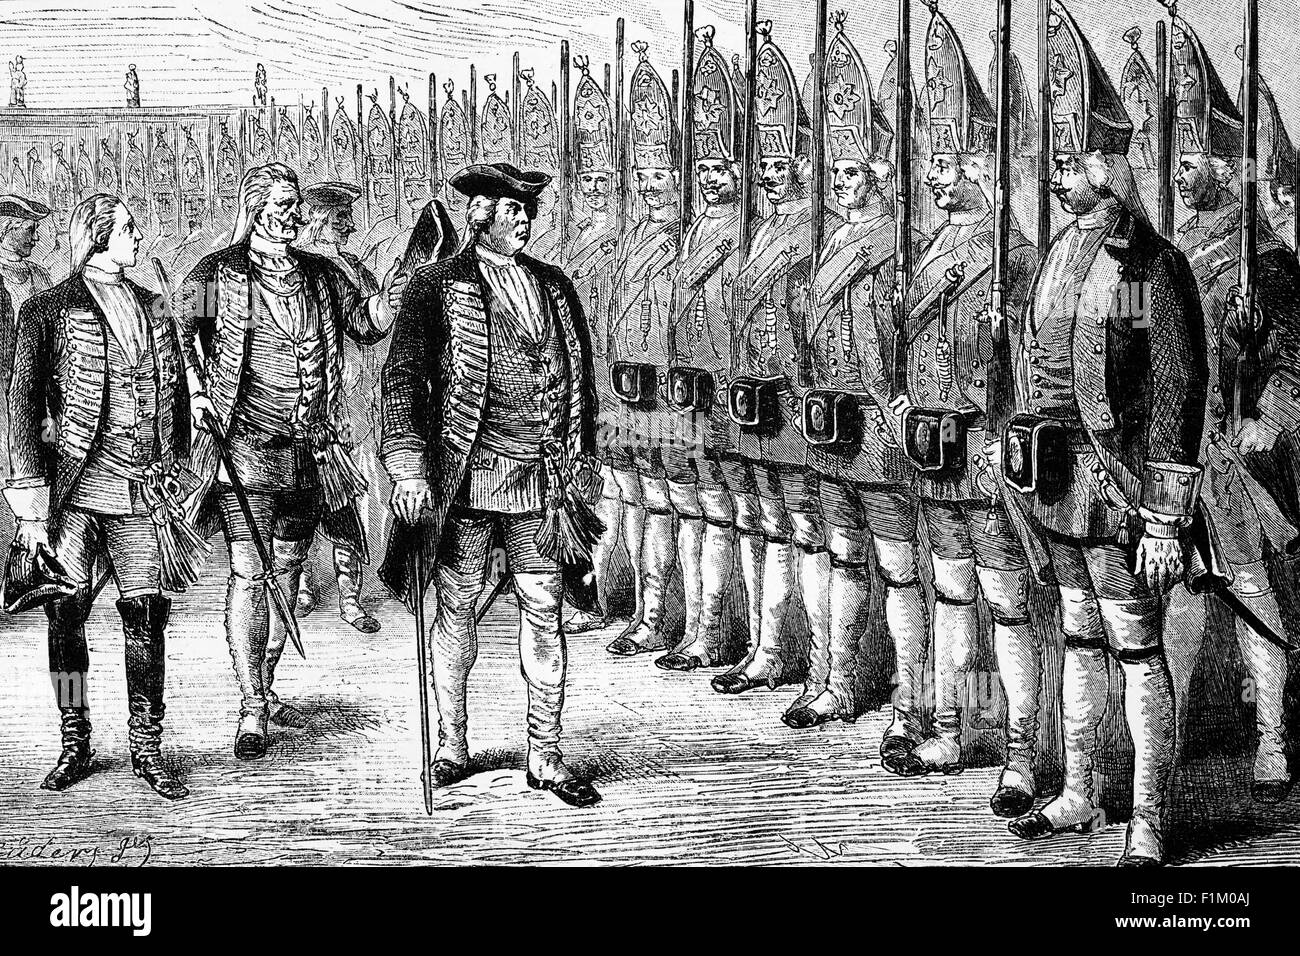 König Friedrich Wilhelm I. von Preußen inspiziert seine Riesengarde, bekannt als die Großen Grenadiere von Potsdam, obwohl die meisten sie die Potsdamer Grenadiere oder Potsdamer Riesen nannten. Die ursprünglich benötigte Höhe betrug 6 preußische Füße (etwa 6'2' oder 1.88 Meter). Einer der höchsten Soldaten, der Ire James Kirkland, war angeblich 2.17 Meter (etwa 7 Fuß)[2] hoch. Er gab den Vätern von großen Söhnen und Grundbesitzern, die ihre höchsten Landarbeiter aufgaben, um sich dem Regiment anzuschließen, Boni. Wenn der Mann nicht daran interessiert war, dem Regiment beizutreten, griff der König zu Zwangsrekrutierung und Entführung. Stockfoto